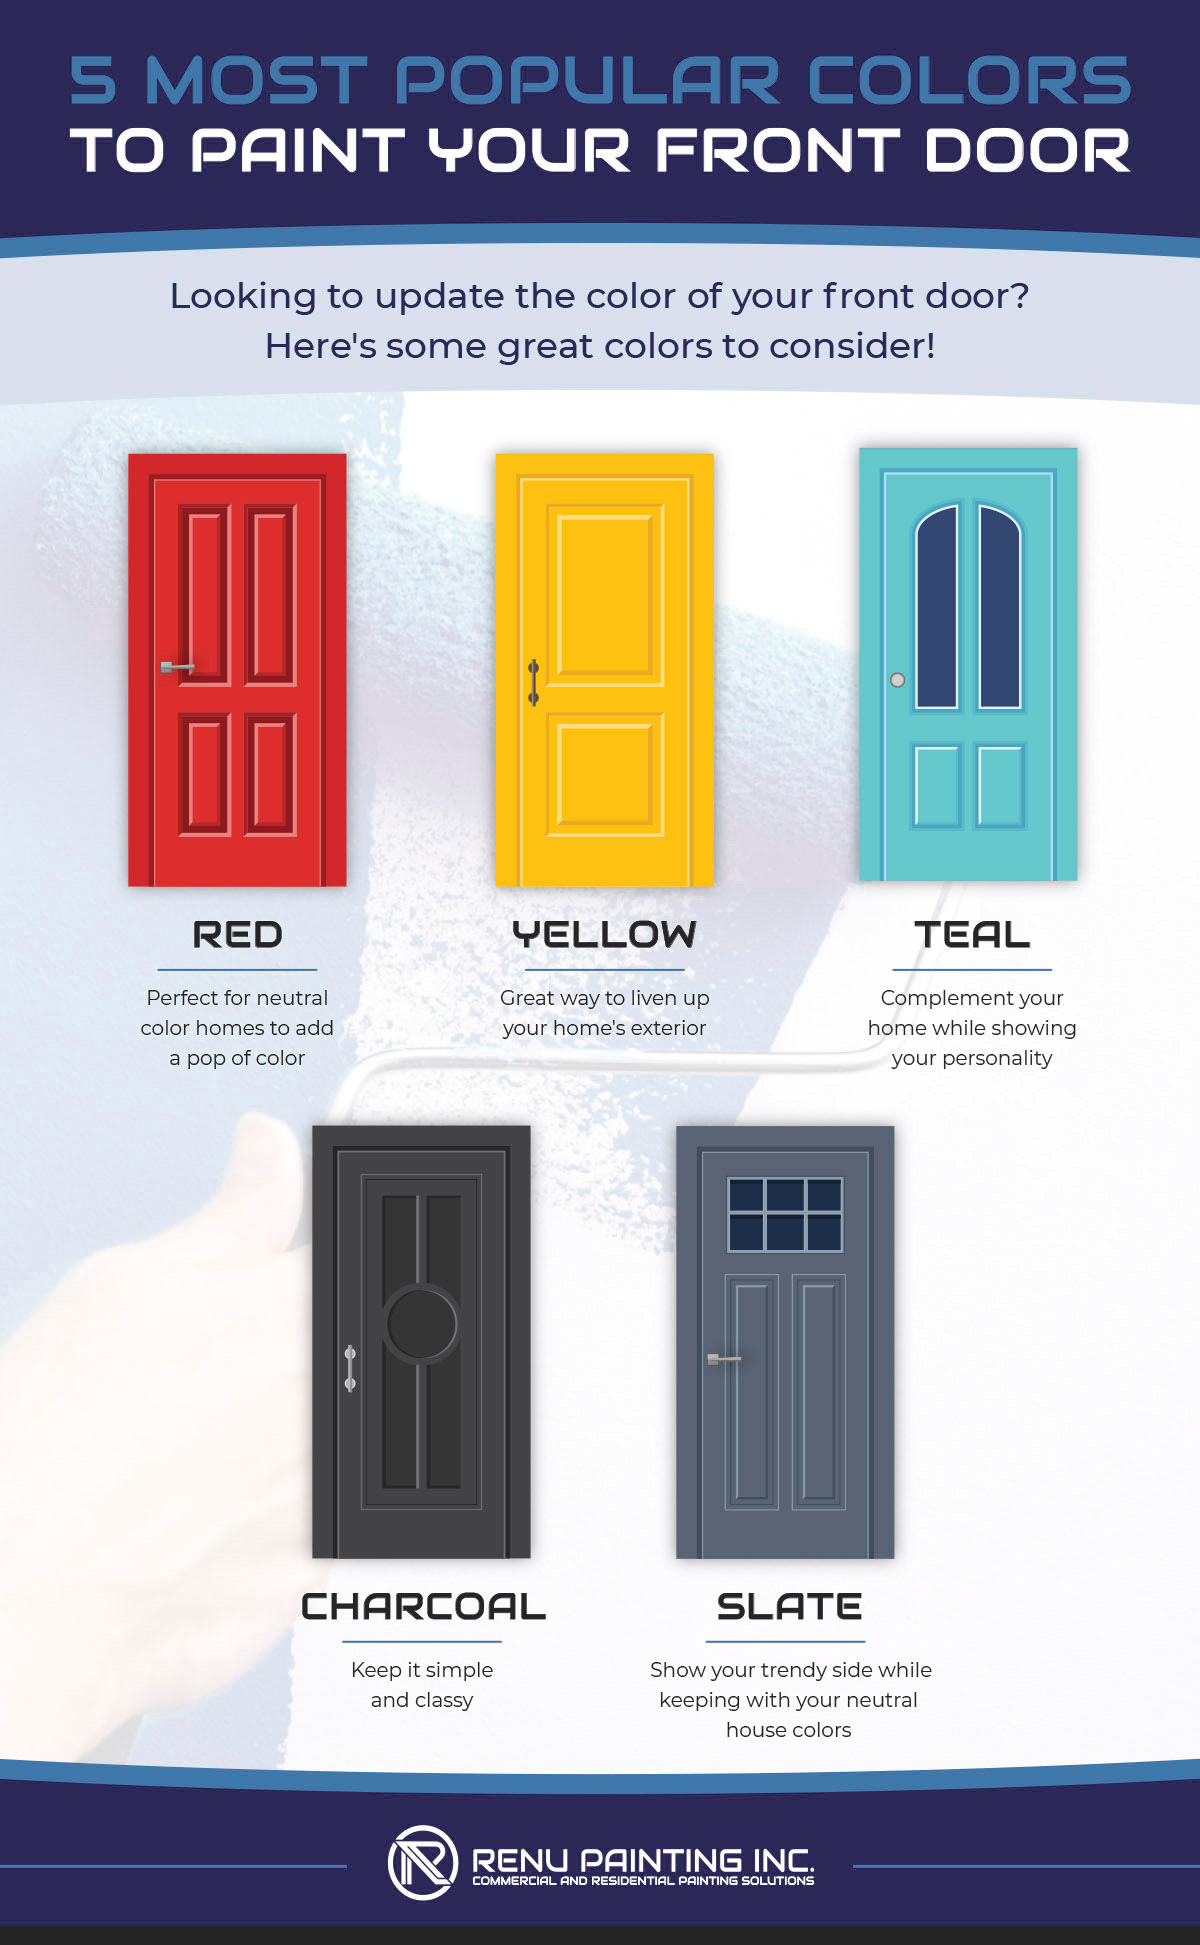 5 Most Popular Colors to Paint Your Front Door.jpg